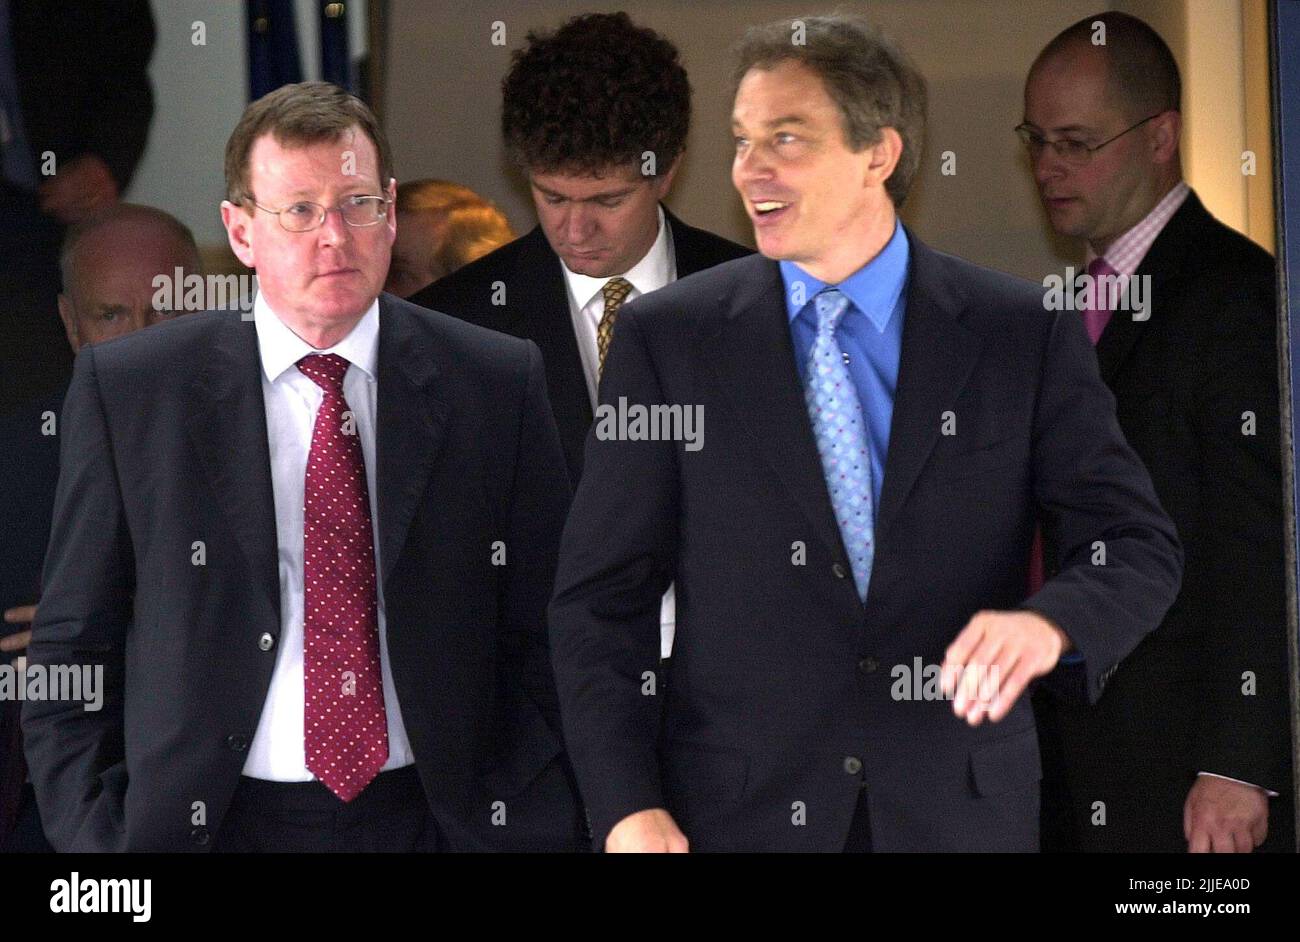 Foto de archivo de fecha 14/6/2002 del Primer Ministro británico Tony Blair (derecha) con David Trimble, el primer Ministro de Irlanda del Norte en el aeropuerto de Jersey, Jersey, antes de la cumbre del Consejo Británico-Irlandés que tendrá lugar en Jersey. El antiguo primer ministro de Irlanda del Norte ha muerto, anunció el Partido Unionista del Ulster. Fecha de emisión: Lunes 25 de julio de 2022. Foto de stock